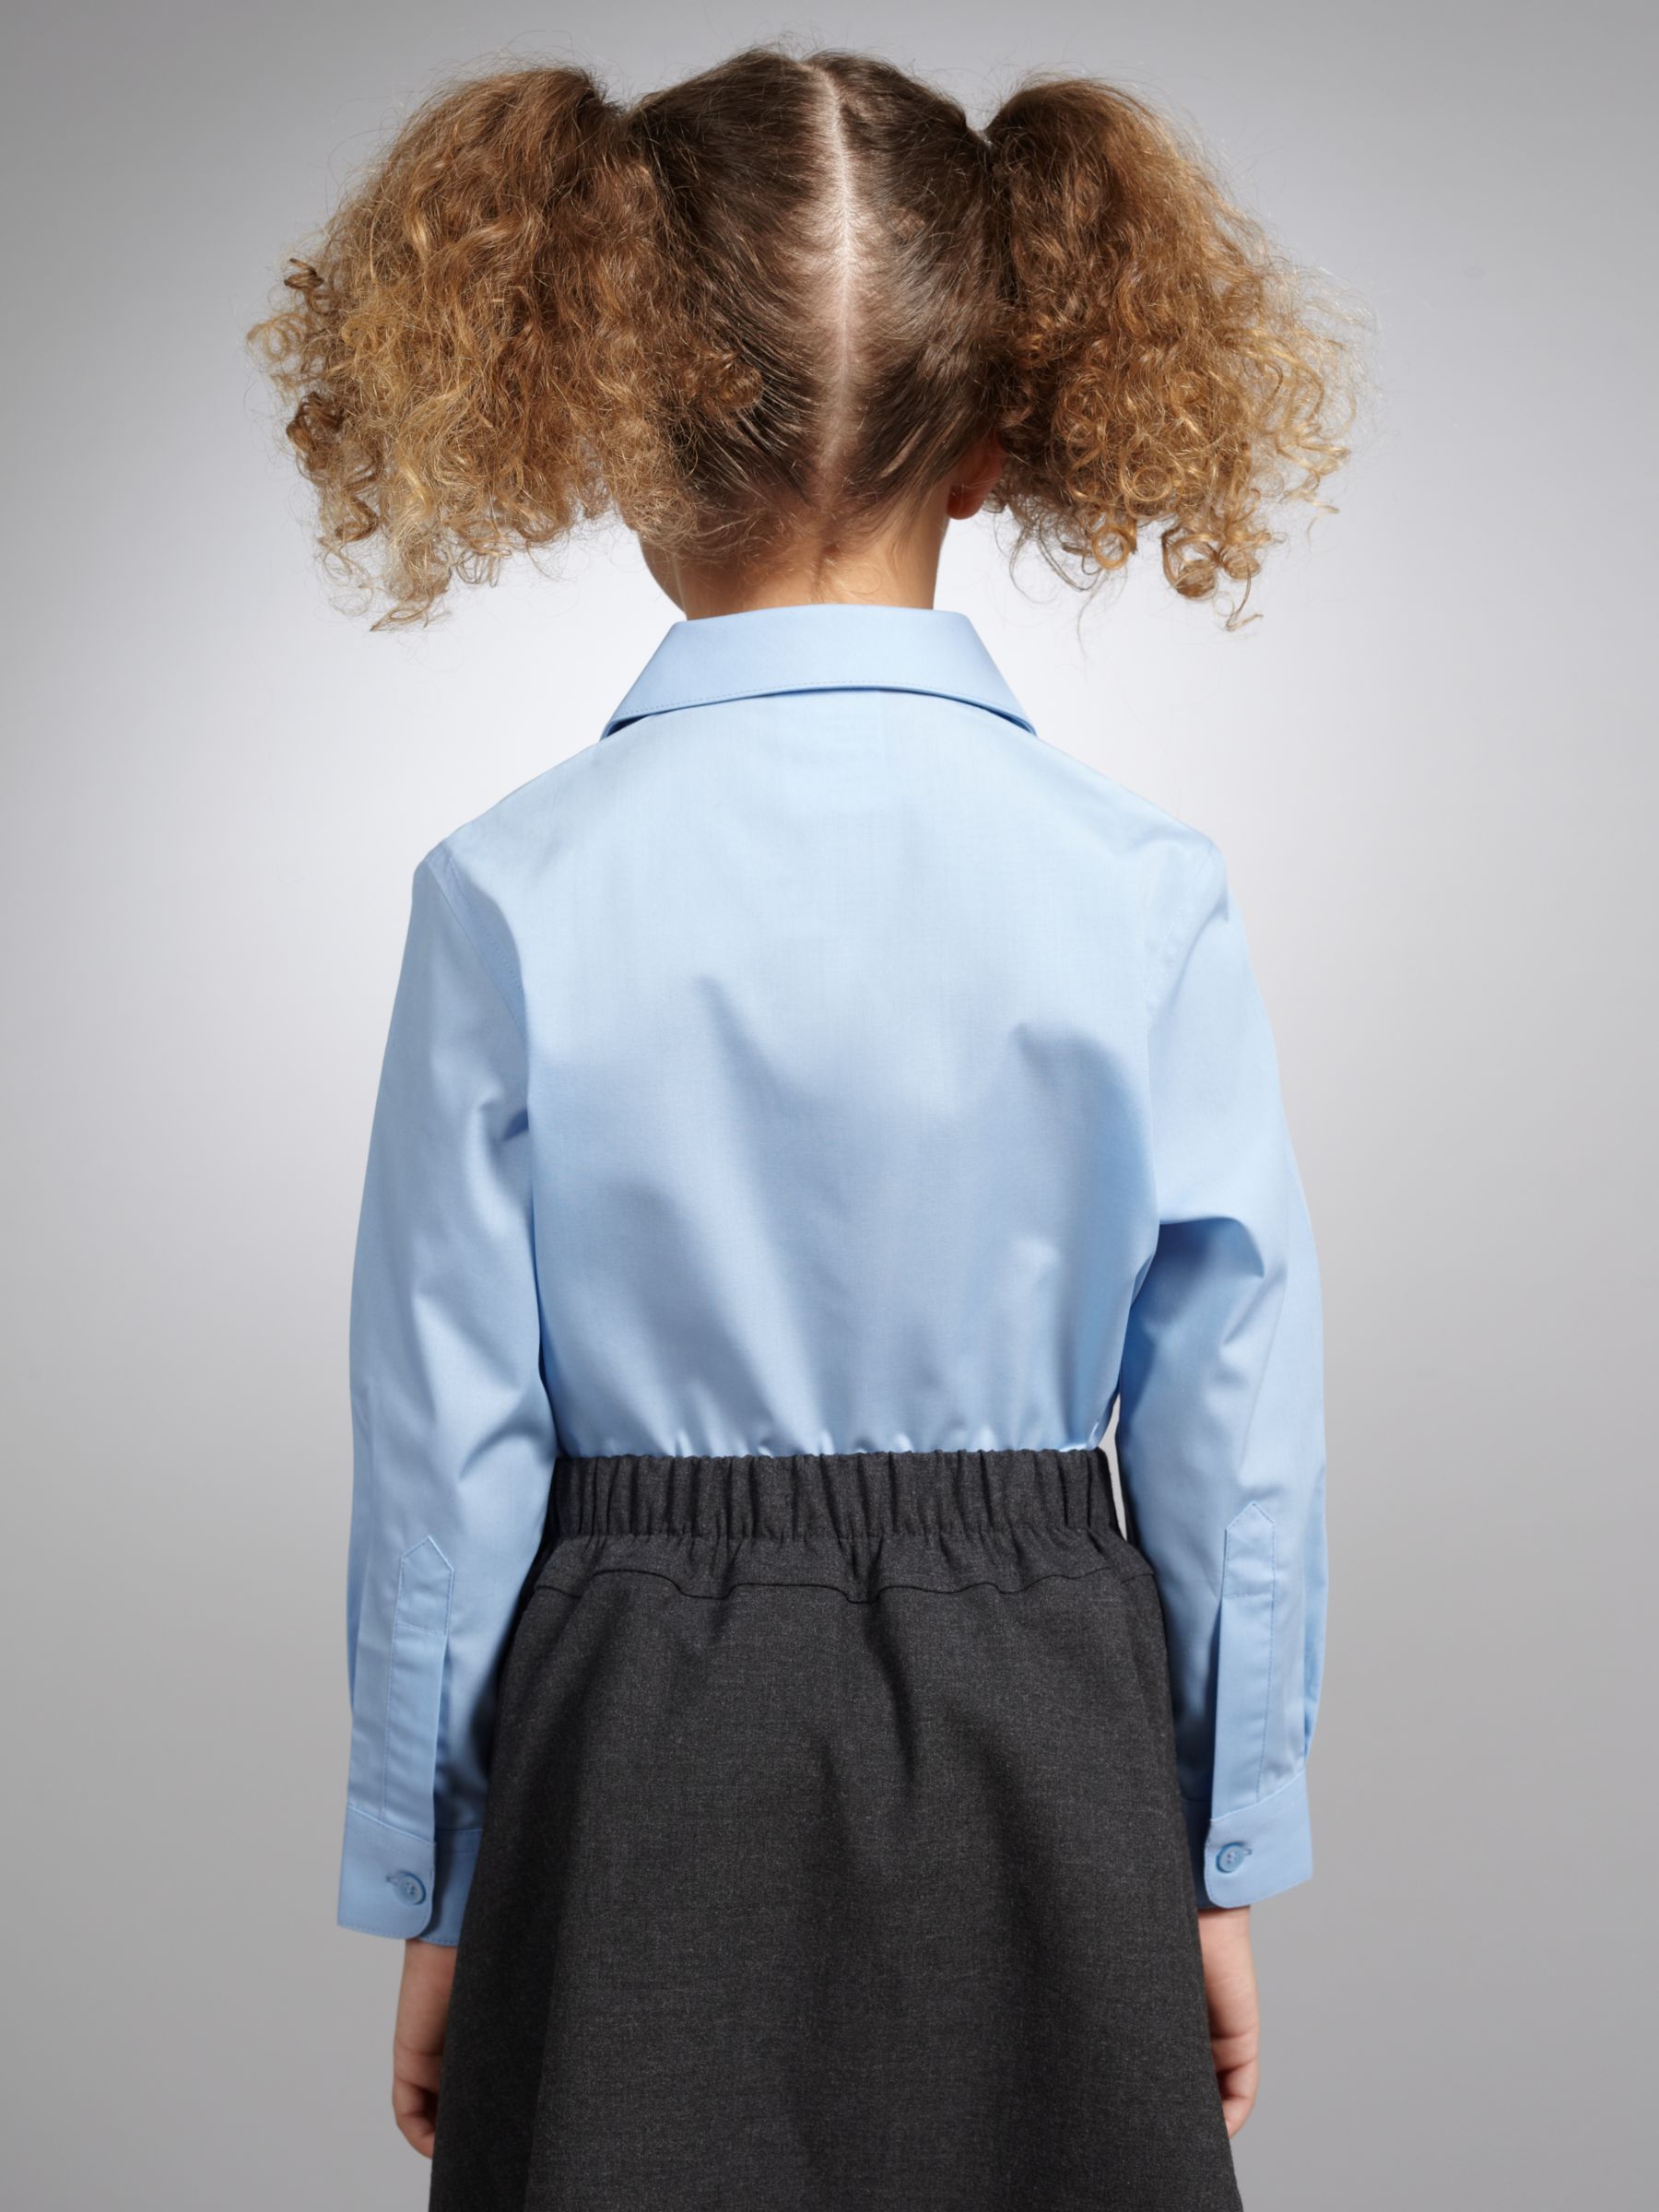 Girls White School Short Sleeve Open Neck Blouse 2 Pack | School ...